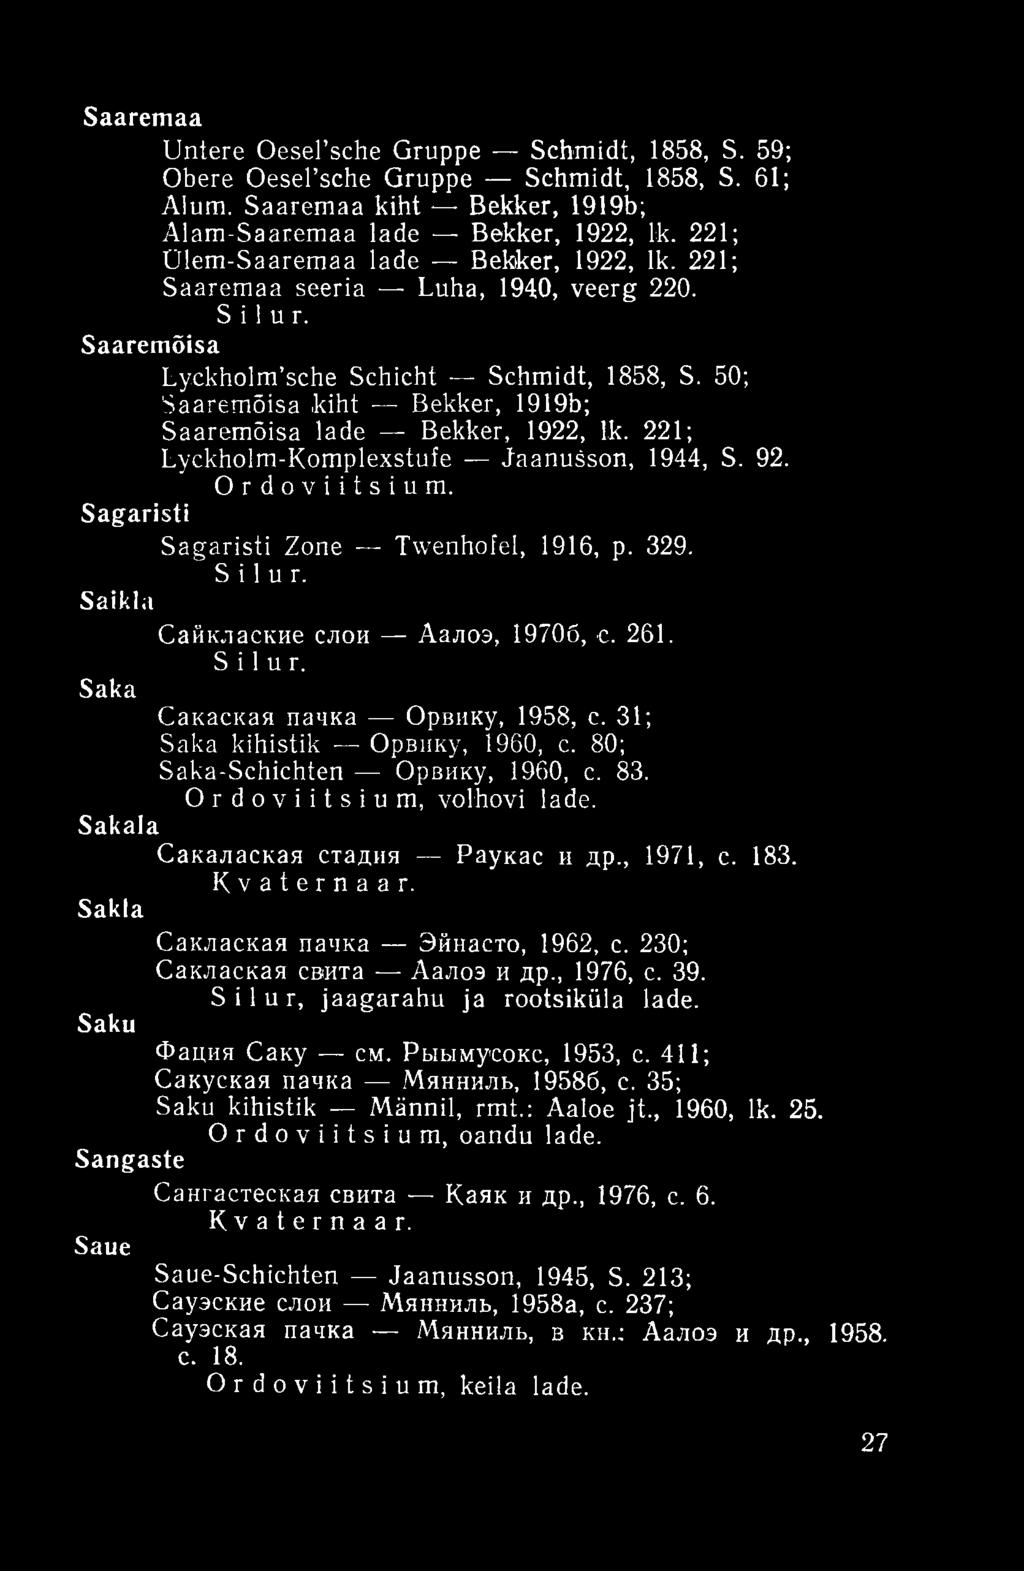 50; Saaremõisa kiht Bekker, 1919b; Saaremõisa lade Bekker, 1922, lk. 221; Lyckholm-Komplexstufe Jaanušson, 1944, S. 92. Ordoviitsium. Sagaristi Sagaristi Zone Twenhofel, 1916, p. 329. Silur.